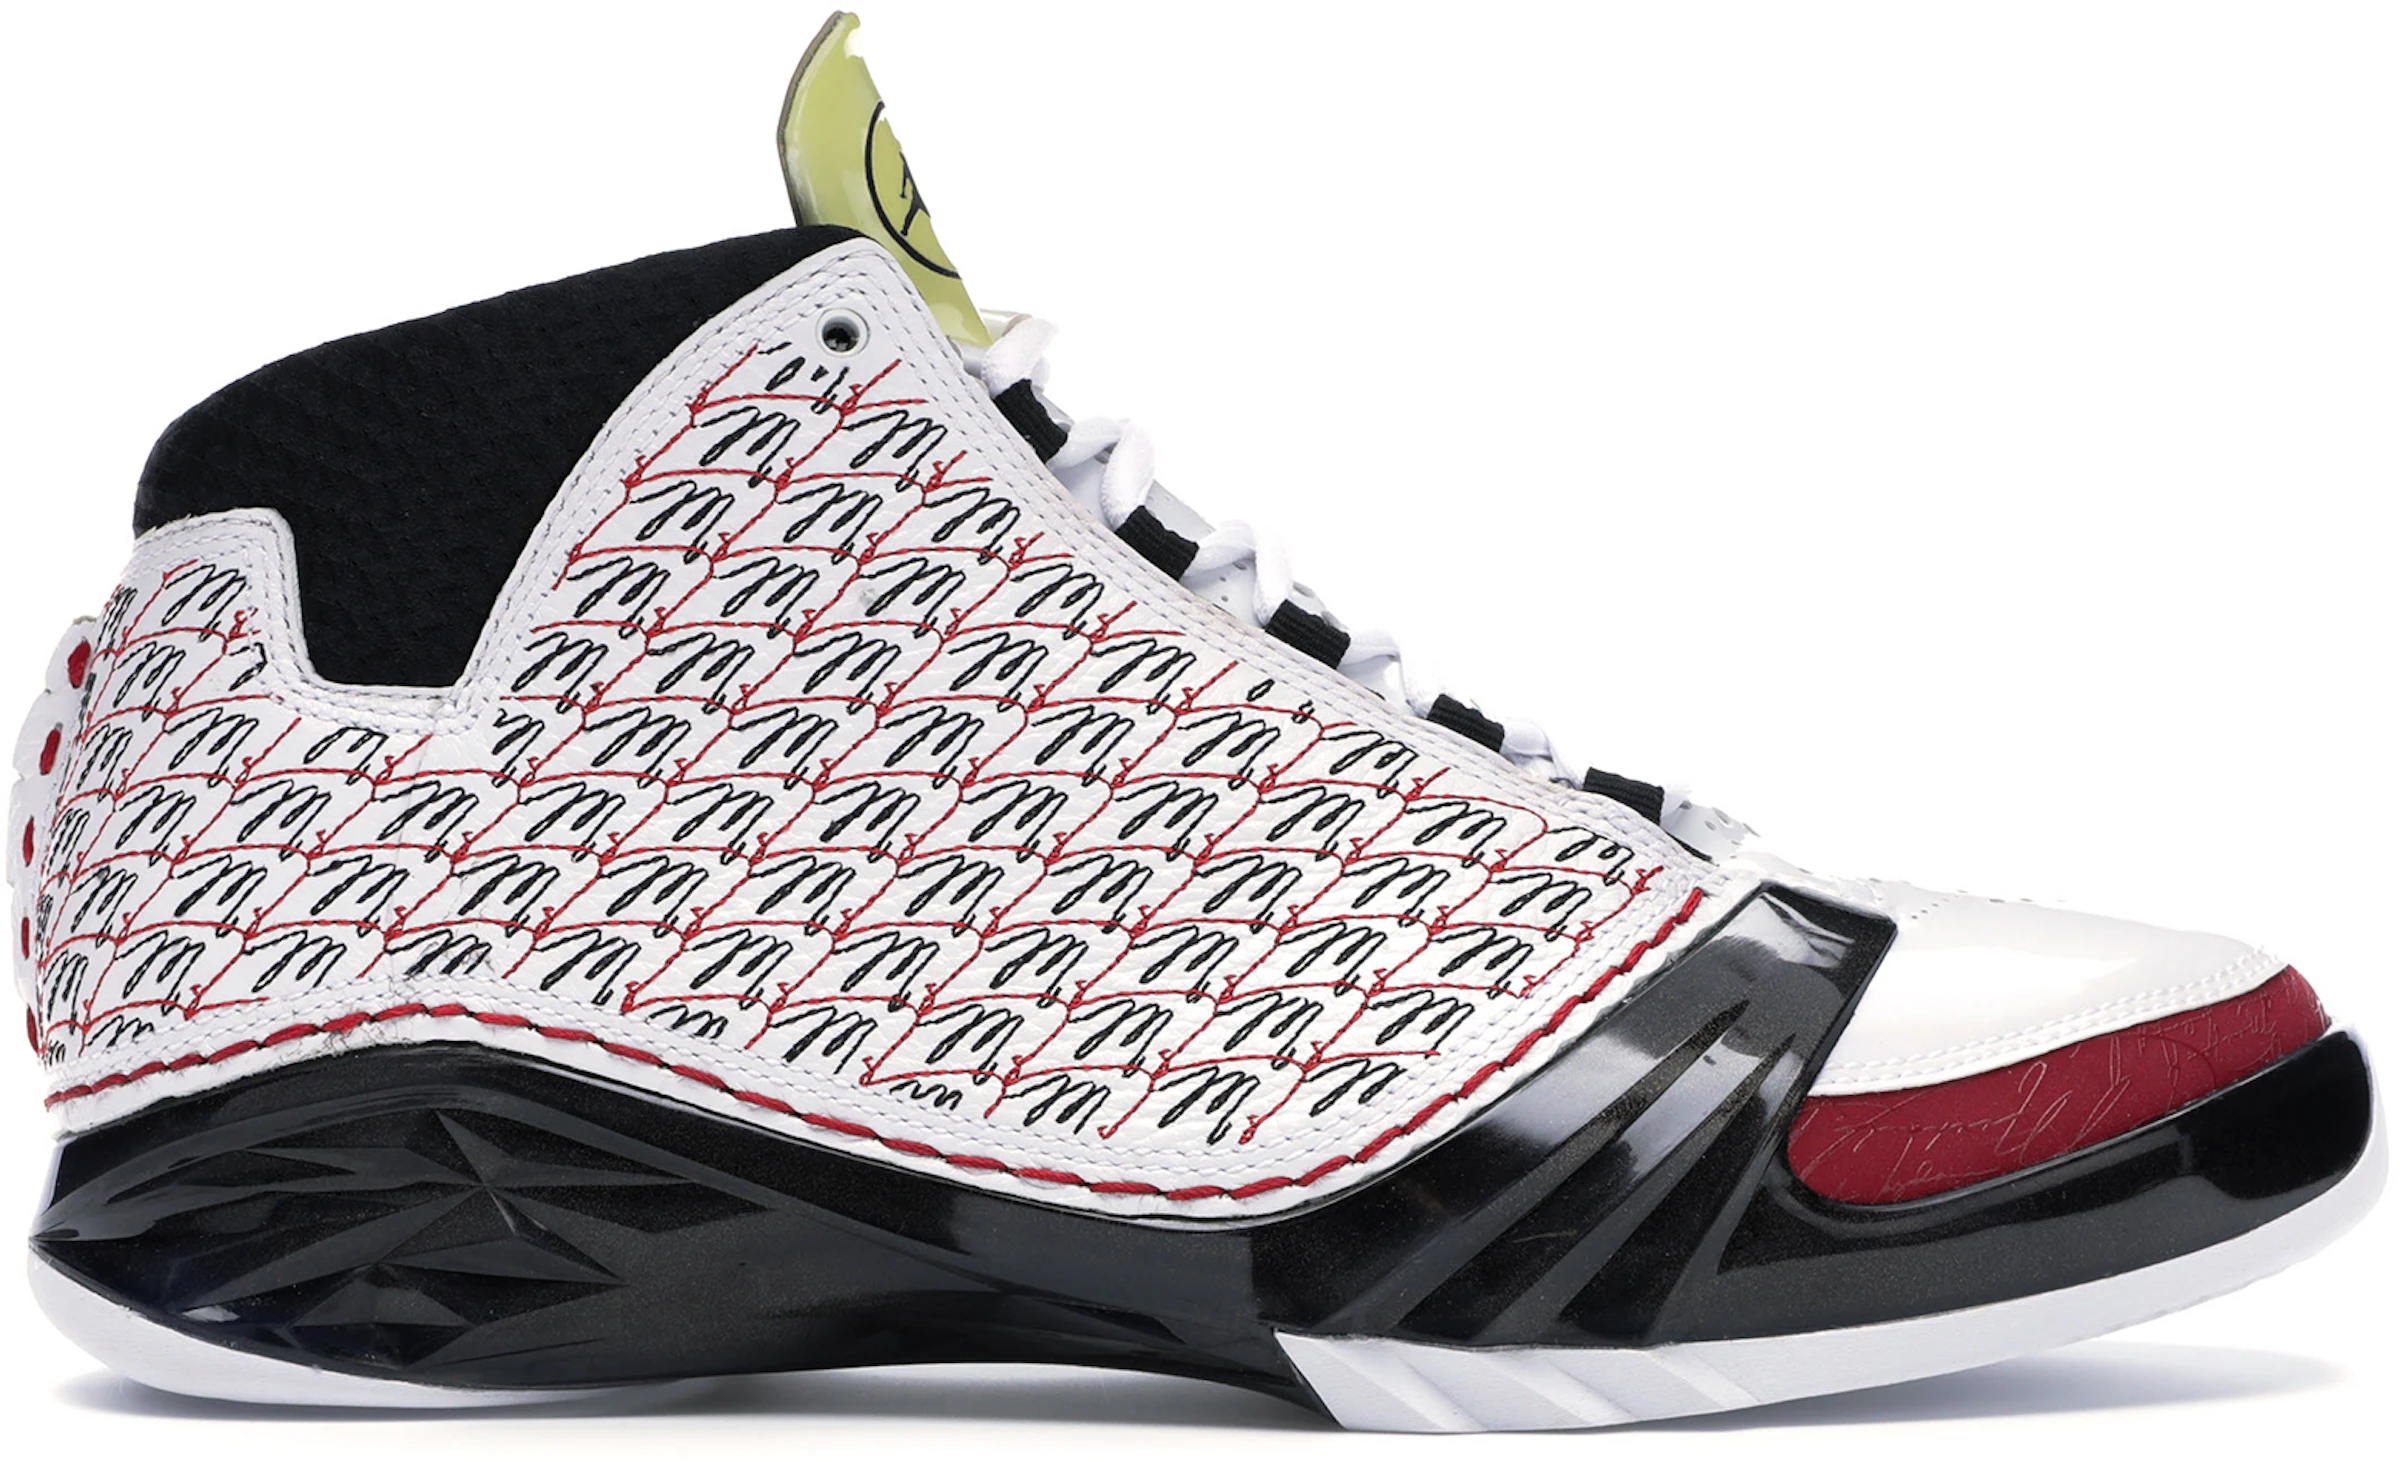 Buy Air Jordan 23 Shoes & New Sneakers - StockX